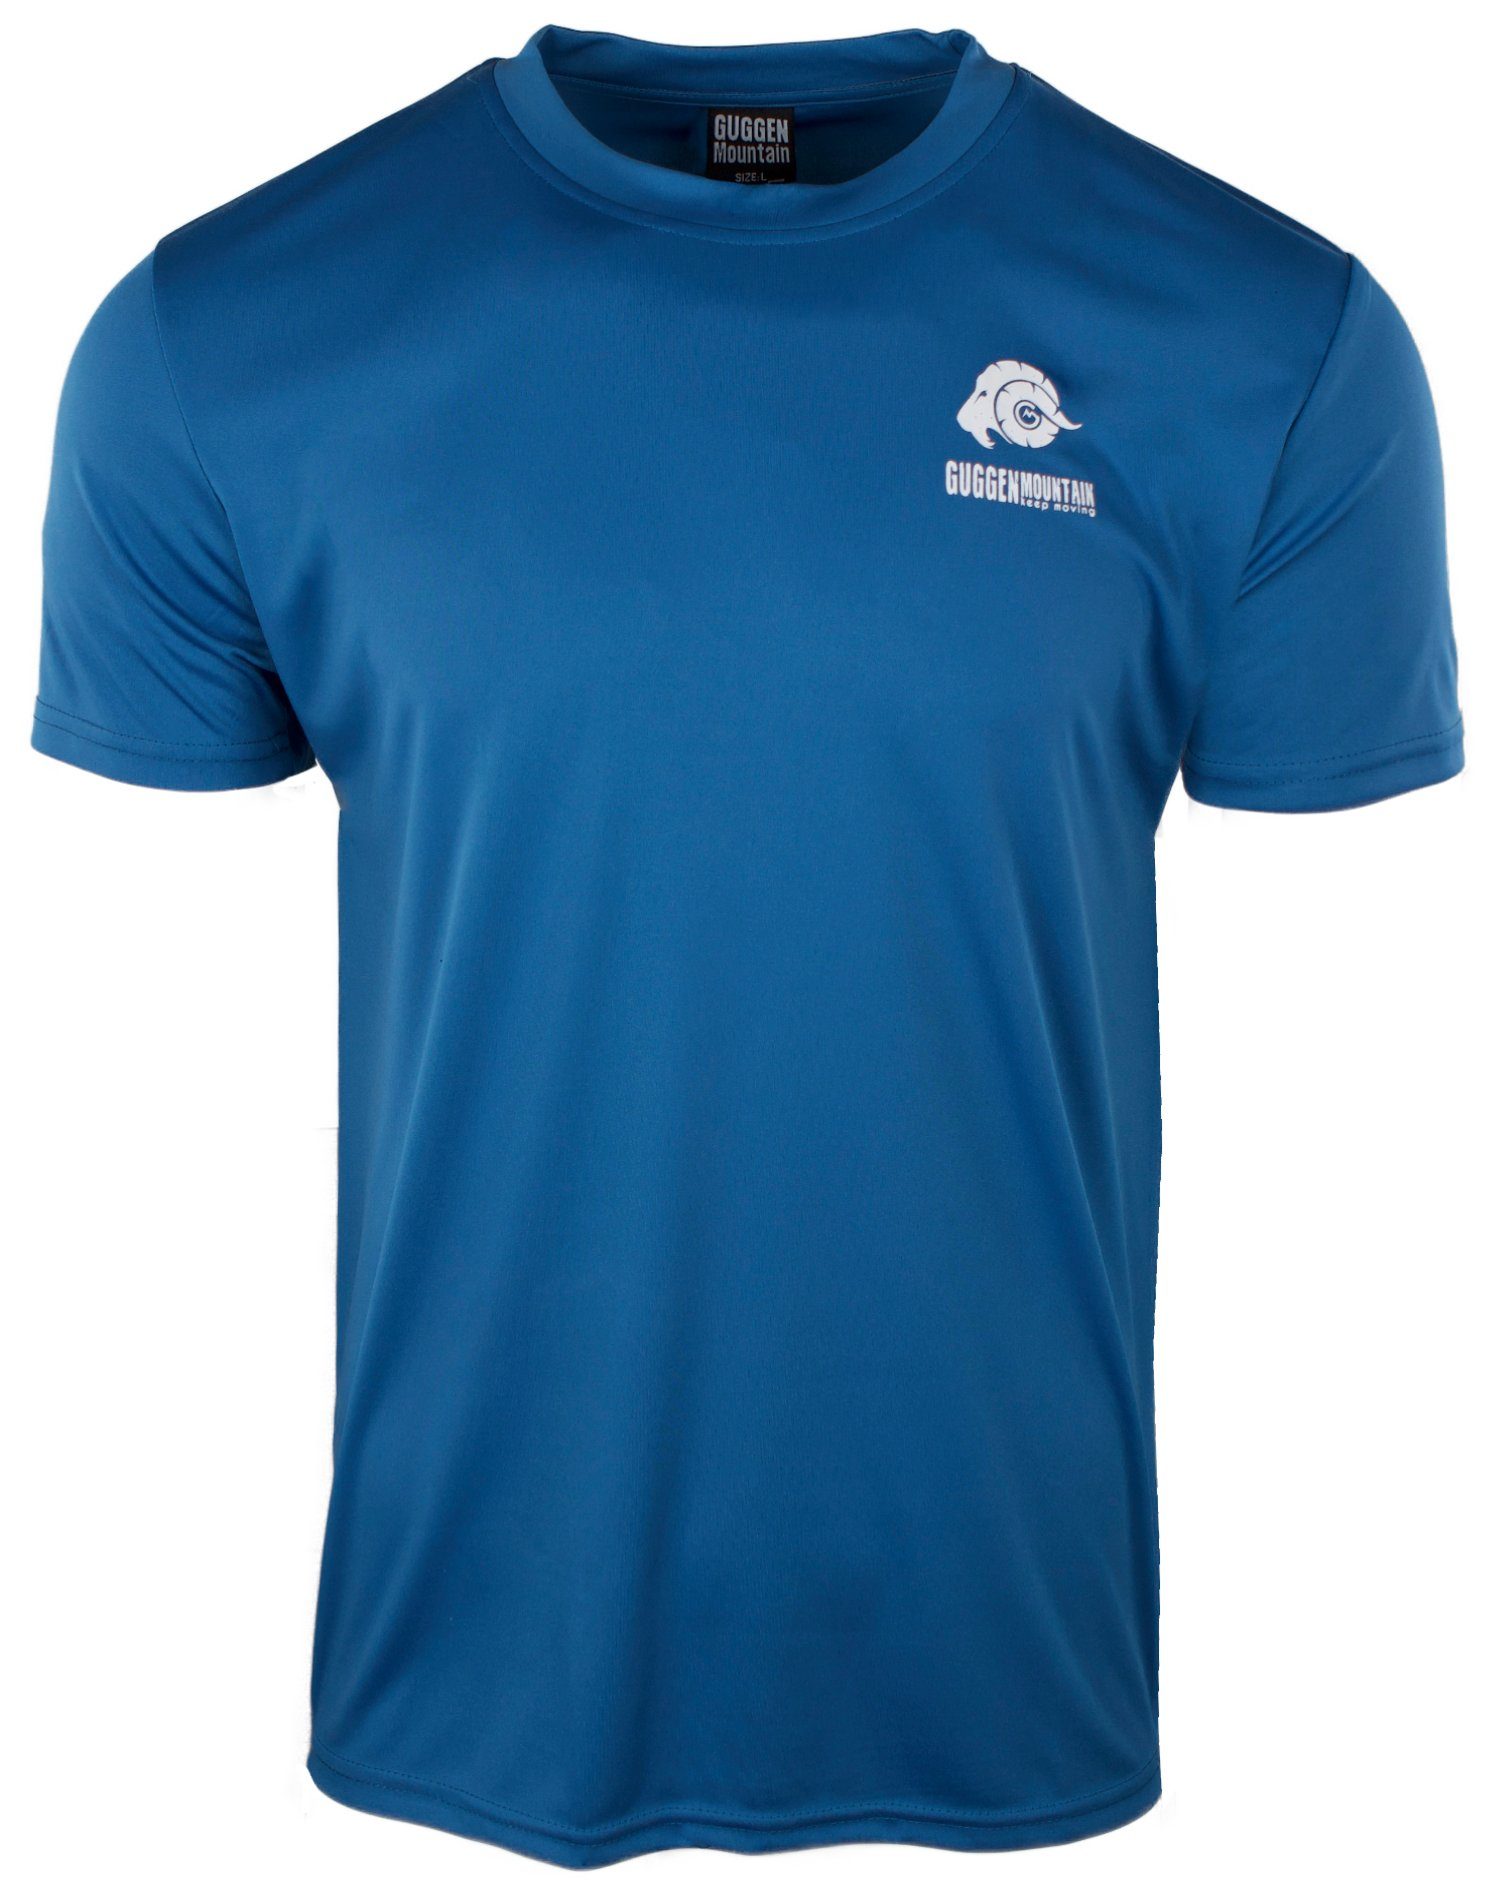 Sportshirt Unifarben, T-Shirt Herren Kurzarm GUGGEN Logo Funktionsshirt FW04 Blau-OHNE-Logo Funktionsshirt Mountain in